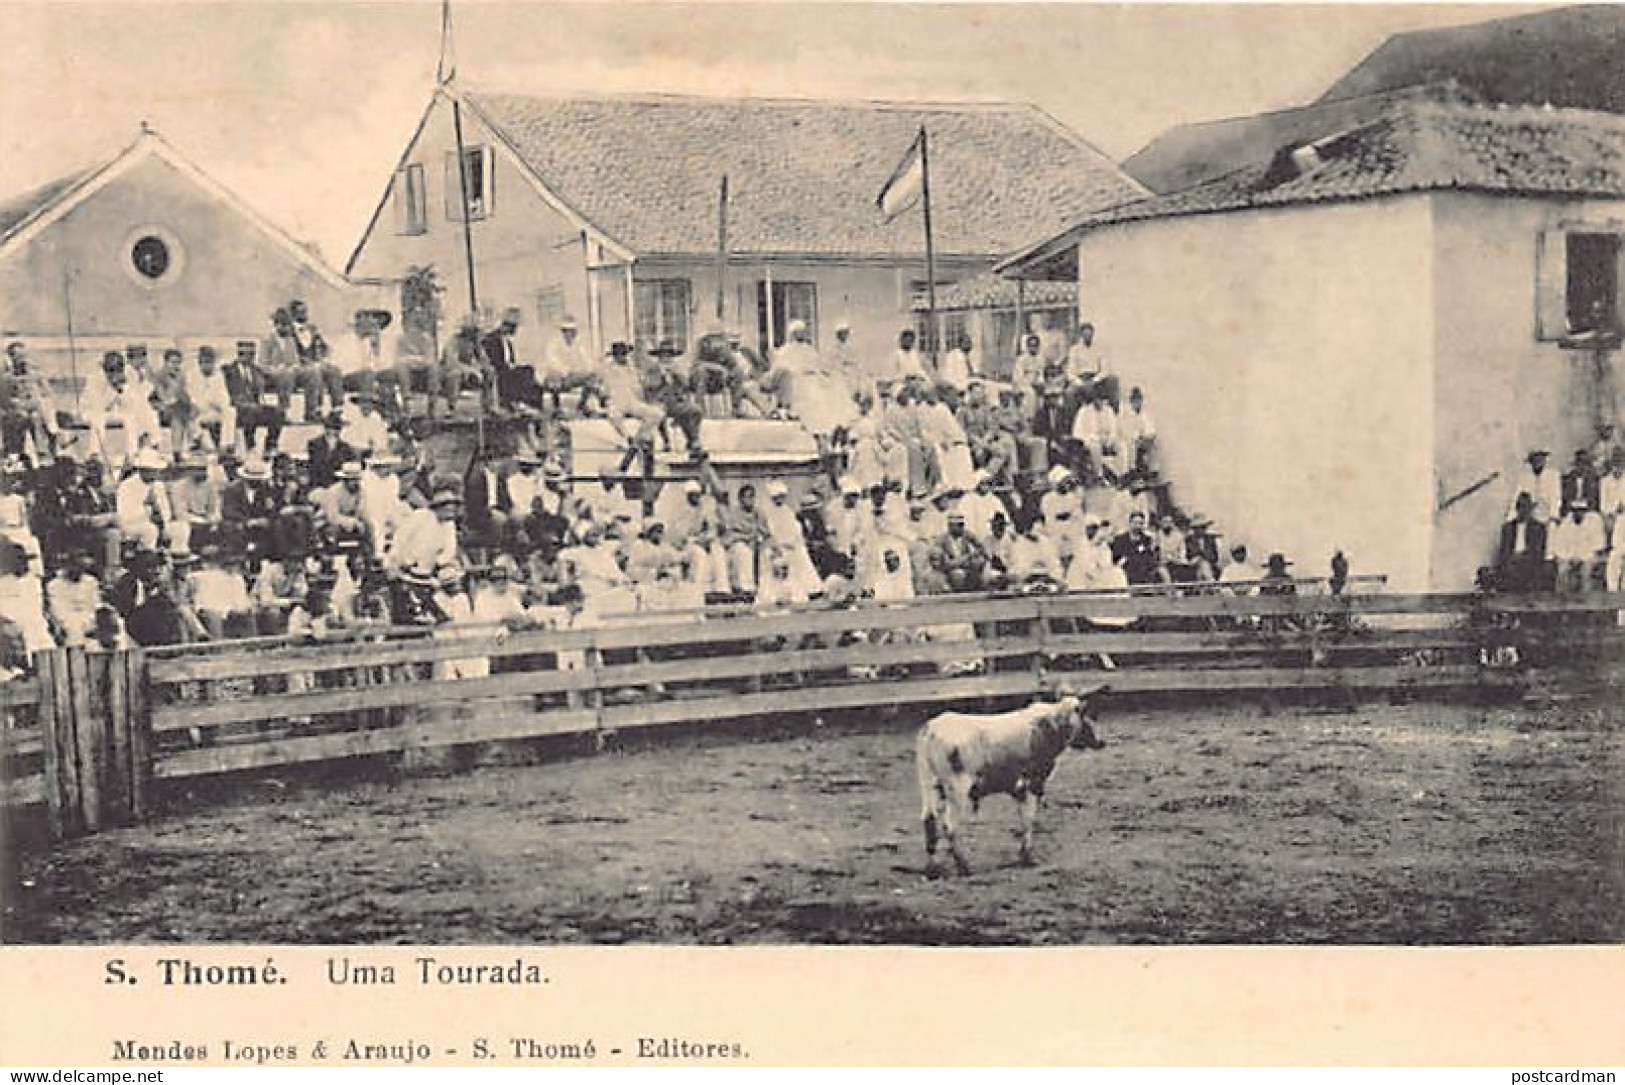 SAO TOME - Uma Tourada - Bullfight - Publ. Mendes. - Sao Tomé E Principe